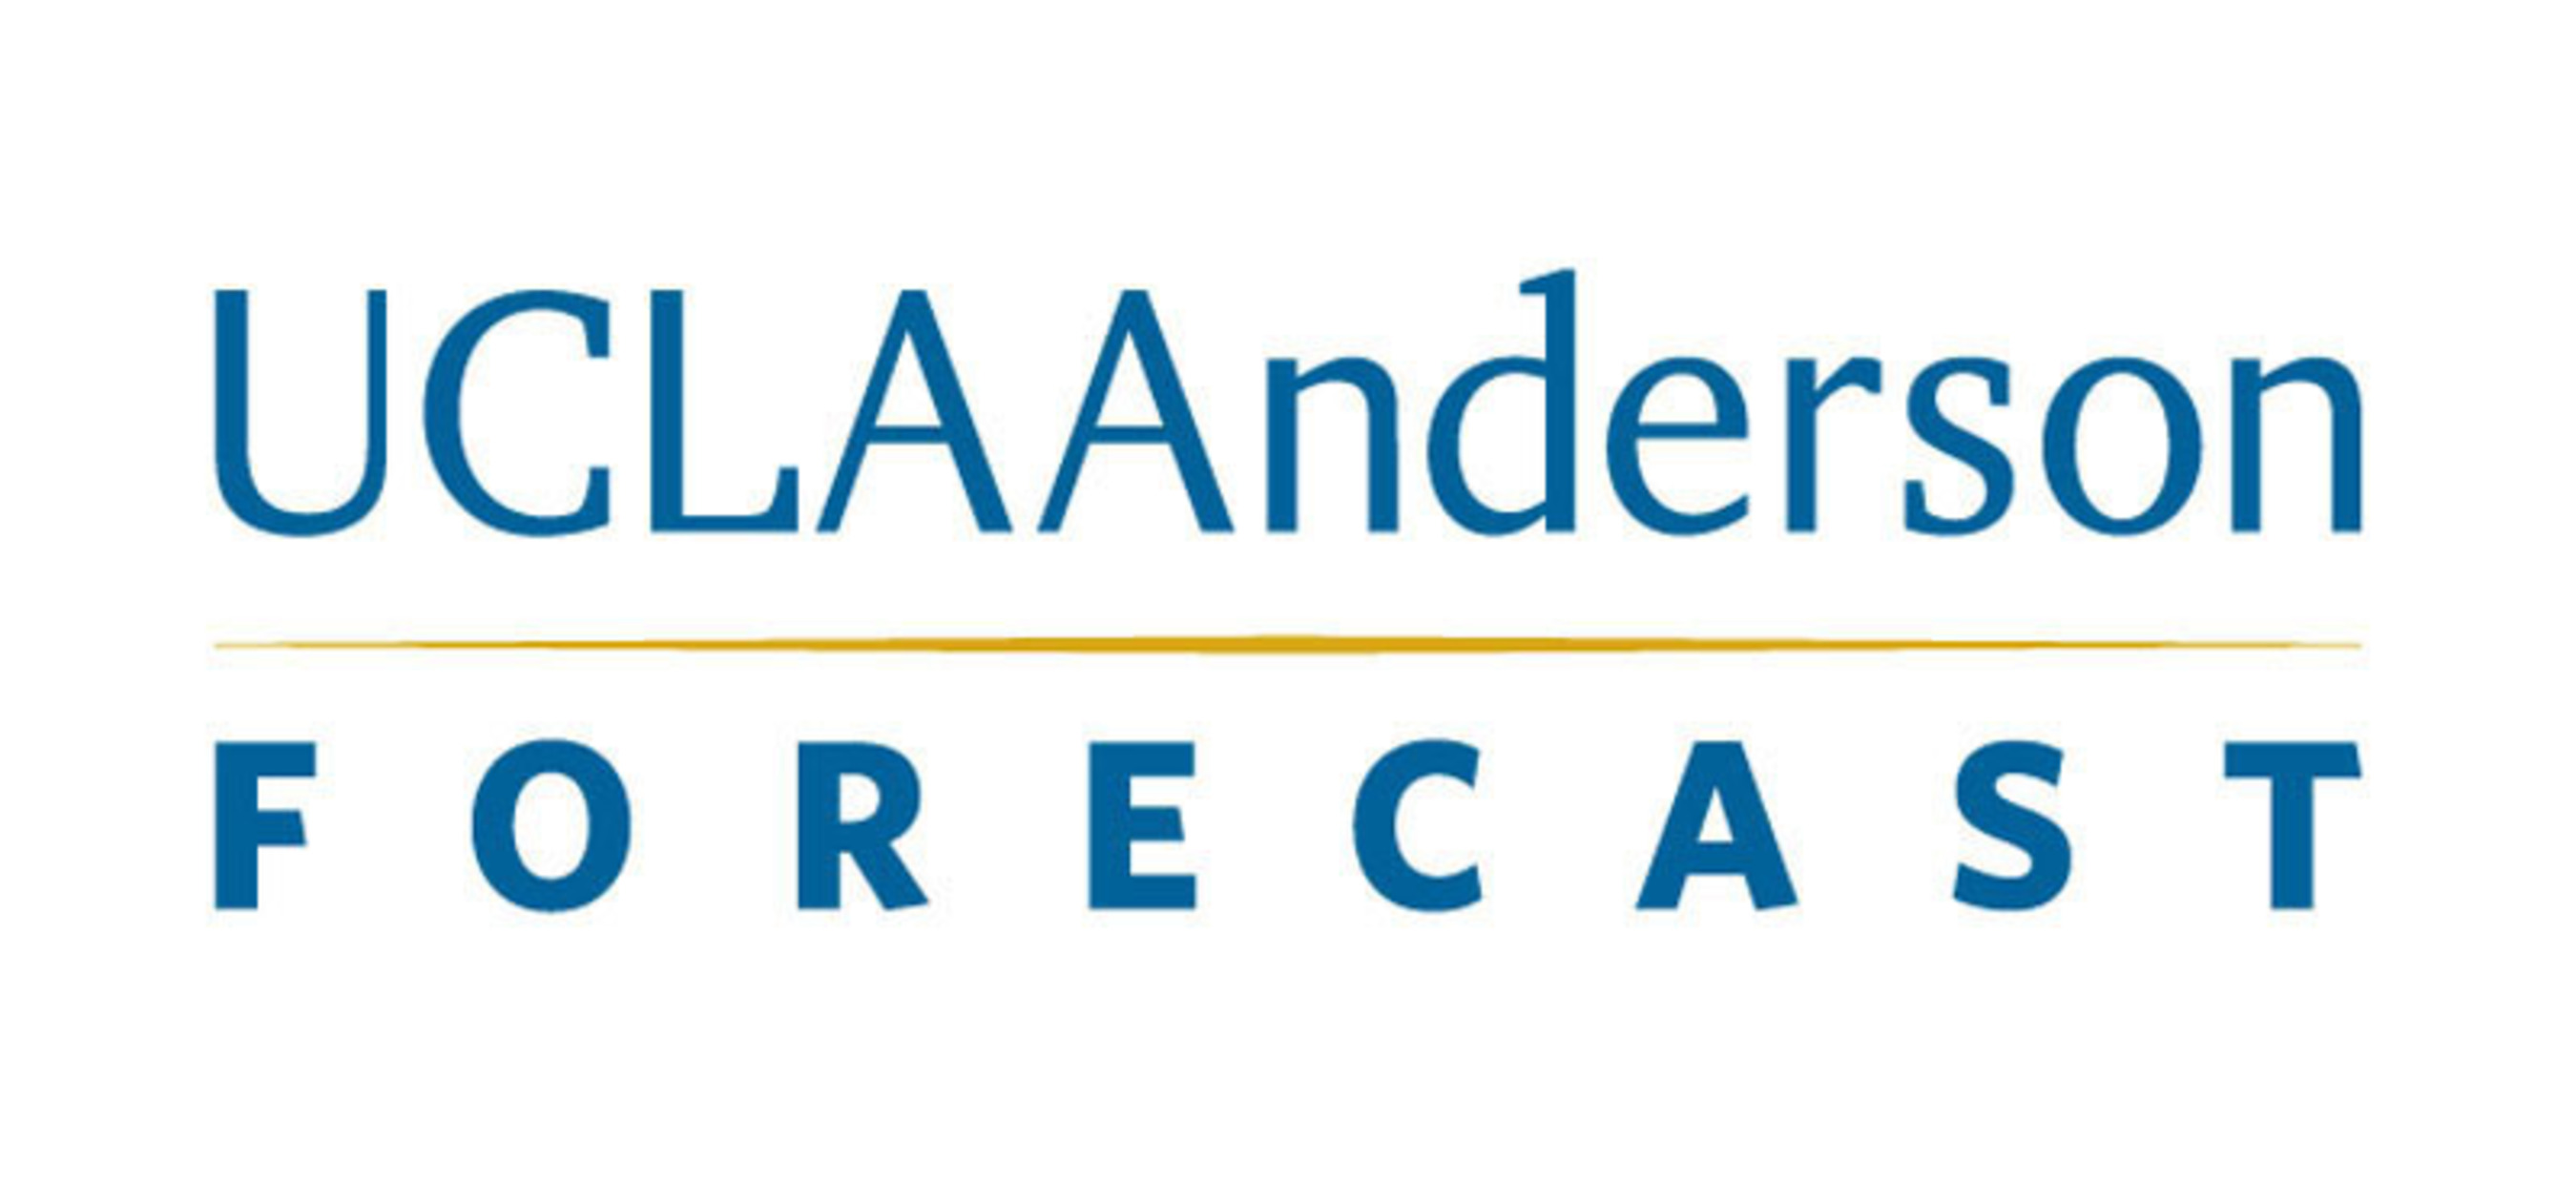 UCLA Anderson Forecast - www.uclaforecast.com. (PRNewsFoto/UCLA Anderson School of Management) (PRNewsFoto/UCLA Anderson Forecast)